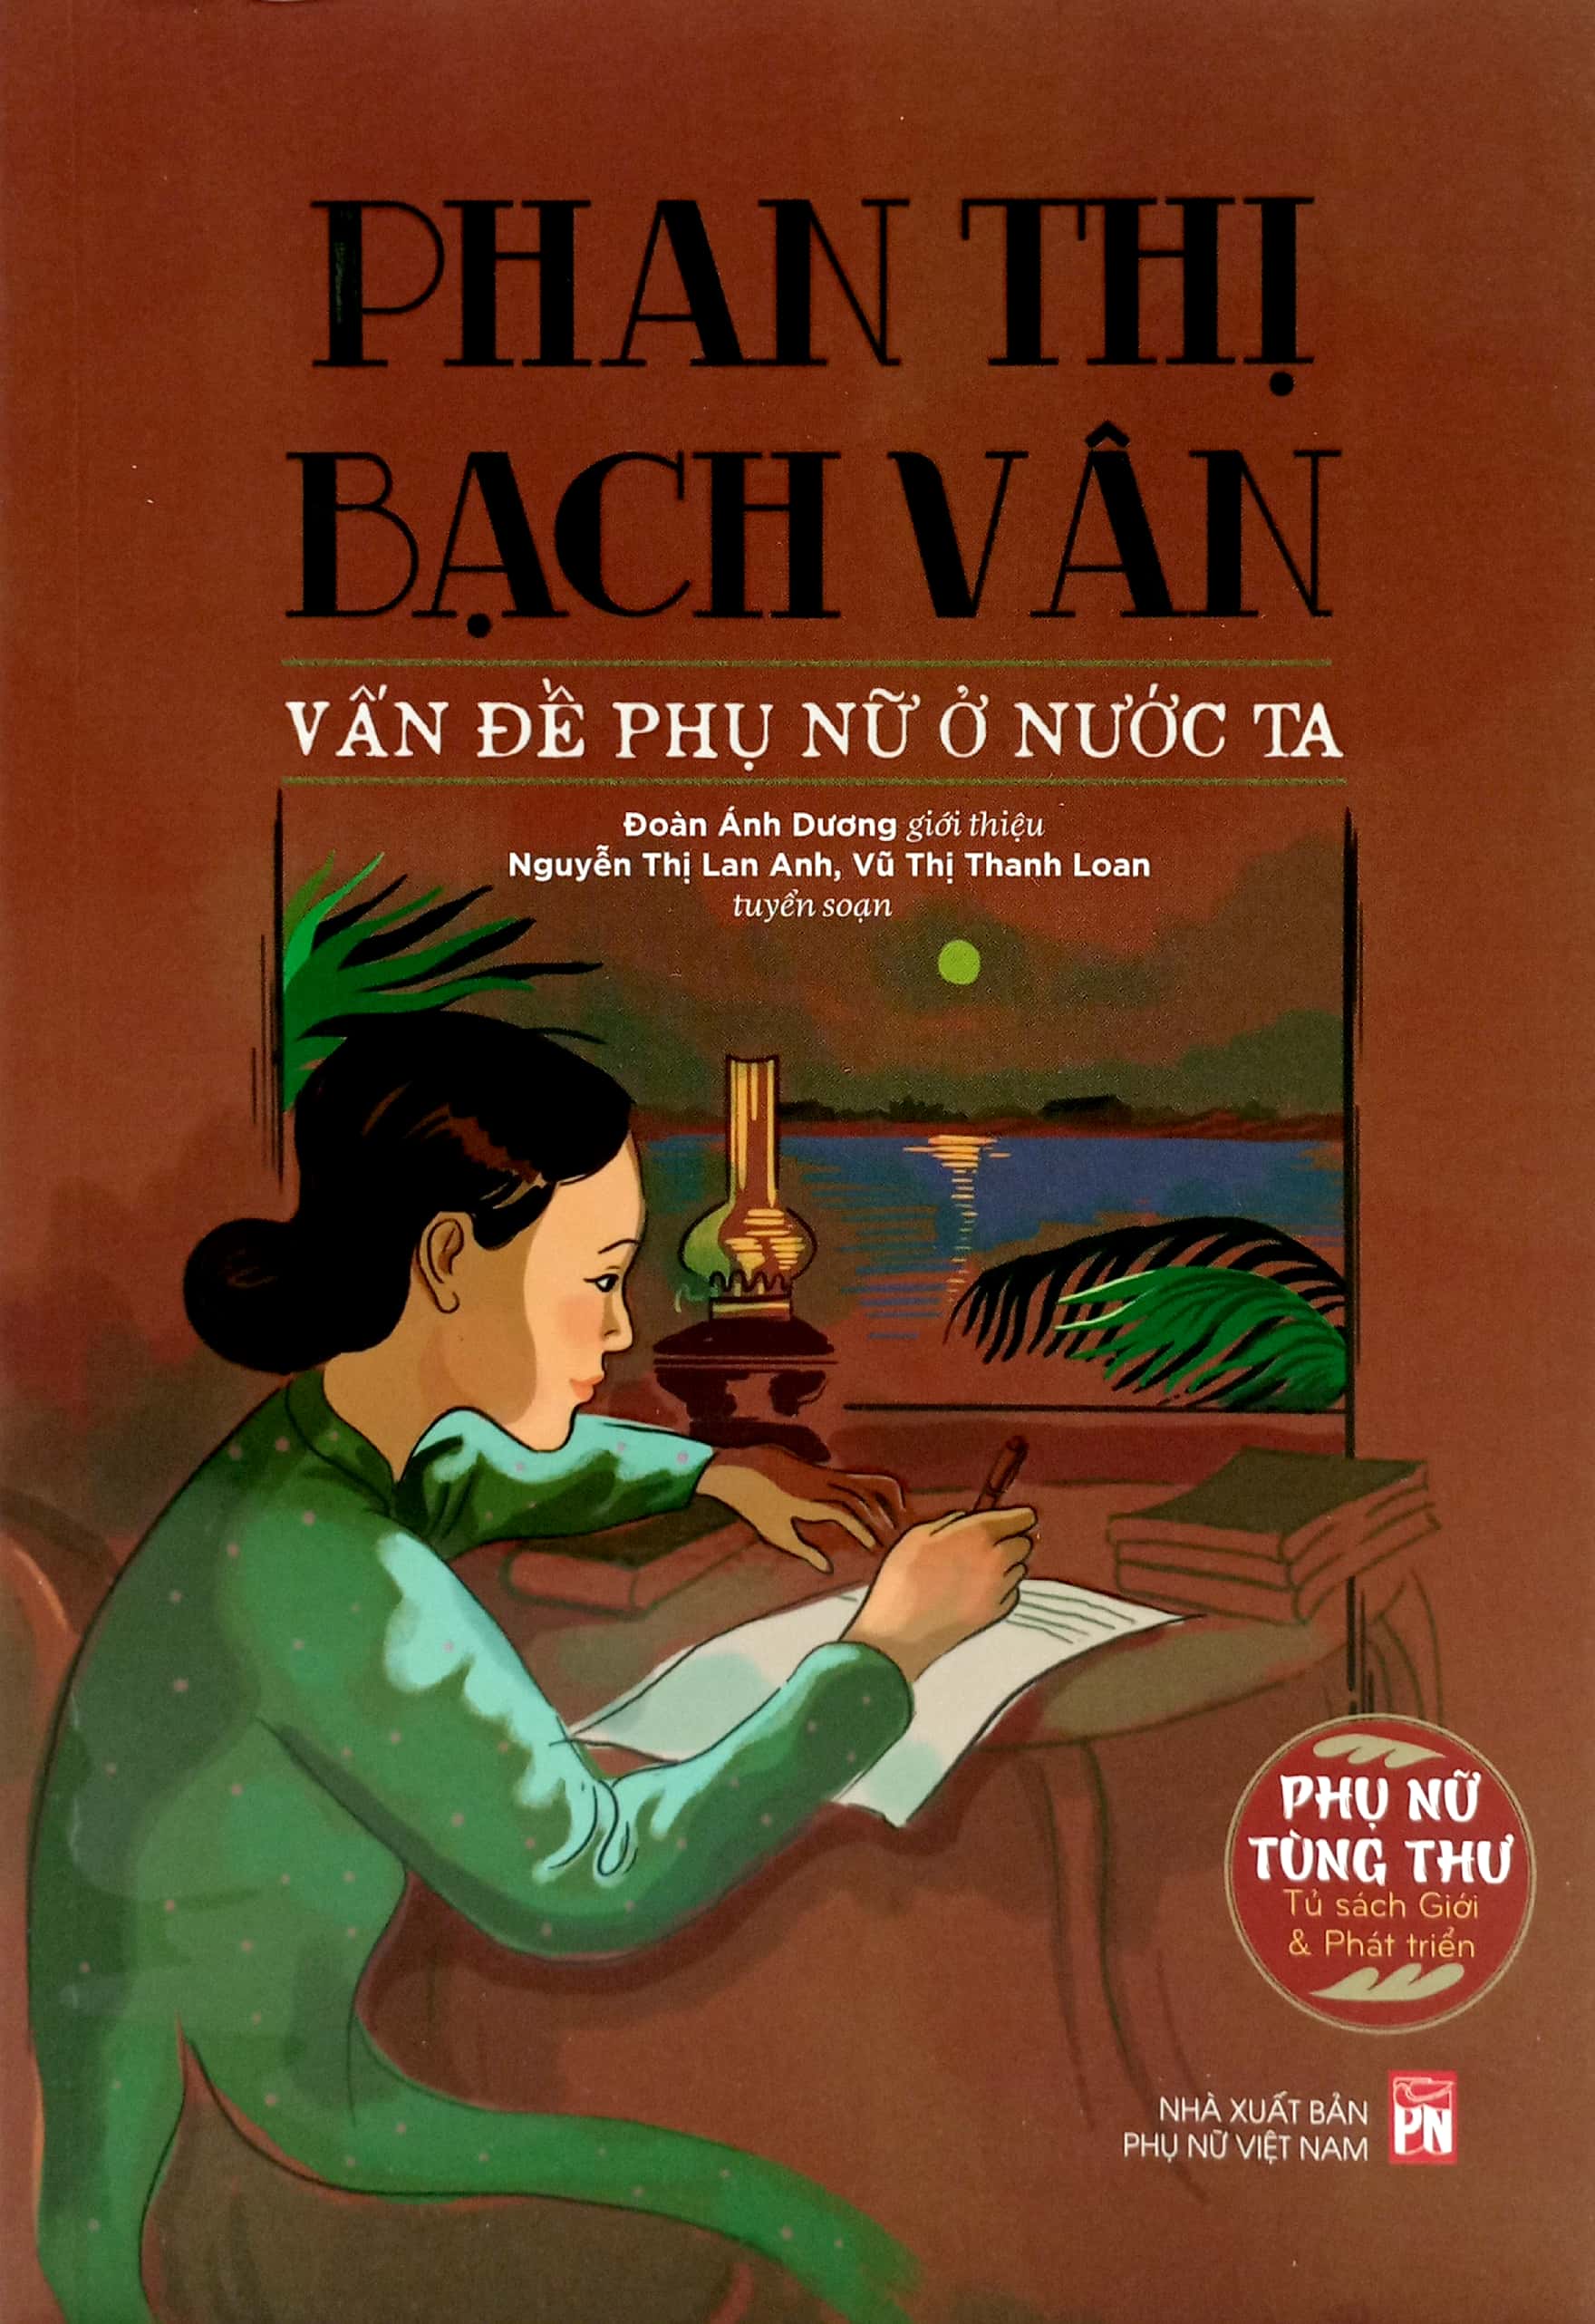 Phụ Nữ Tùng Thư - Giới Và Phát Triển : Phan Thị Bạch Vân - Vấn Đề Phụ Nữ Ở Nước Ta PDF